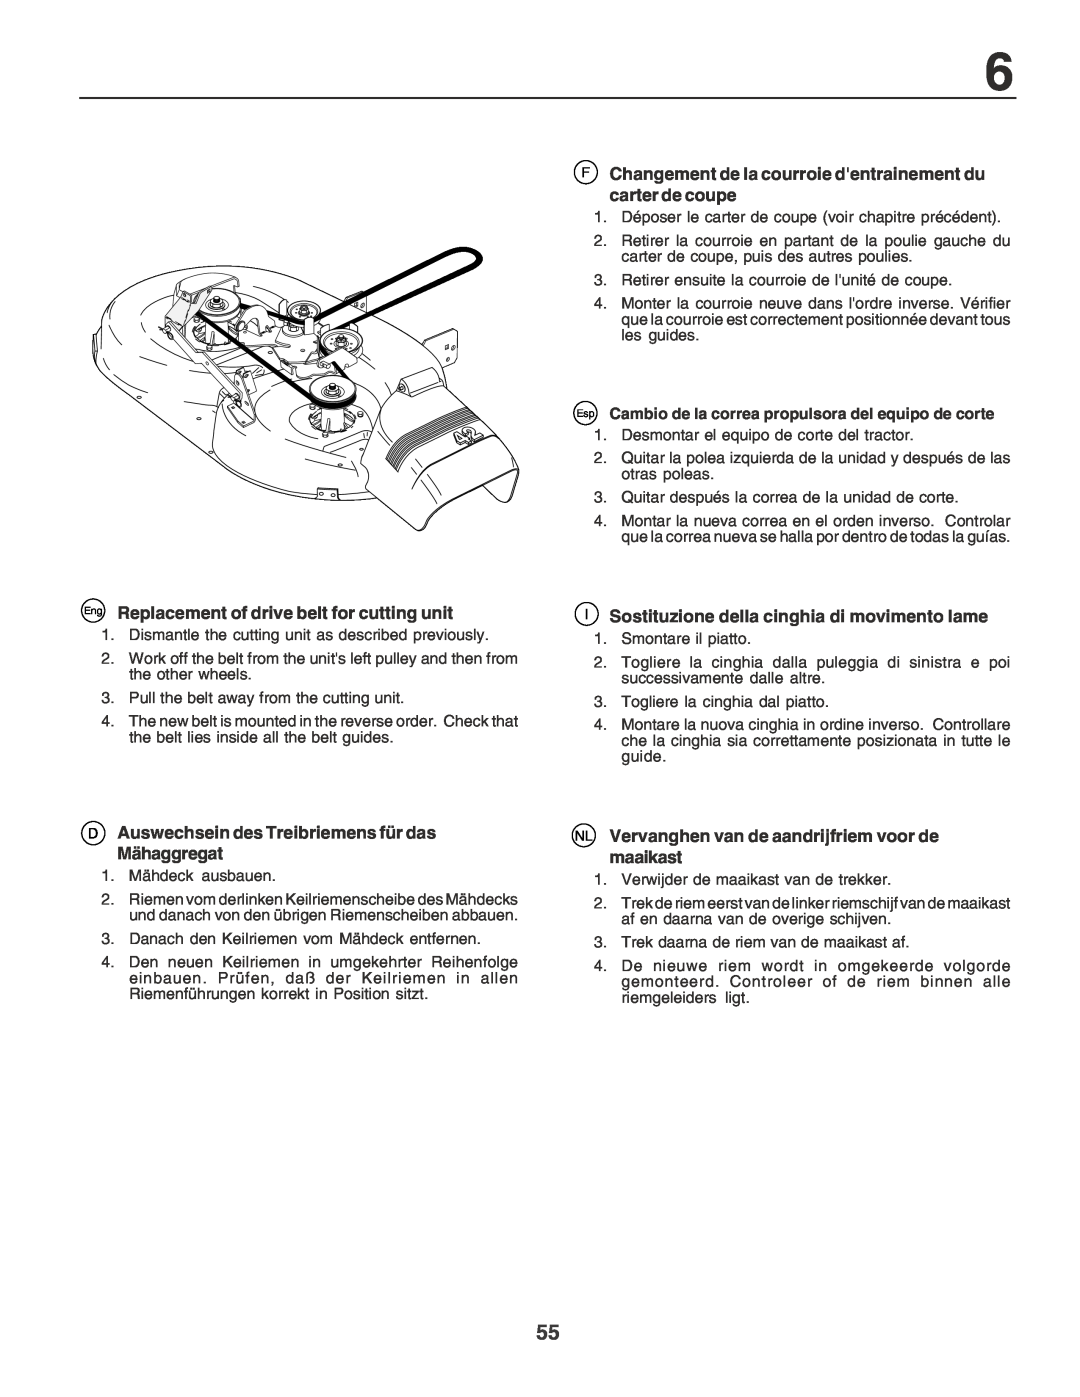 Husqvarna YT155 Eng Replacement of drive belt for cutting unit, Auswechsein des Treibriemens für das Mähaggregat 